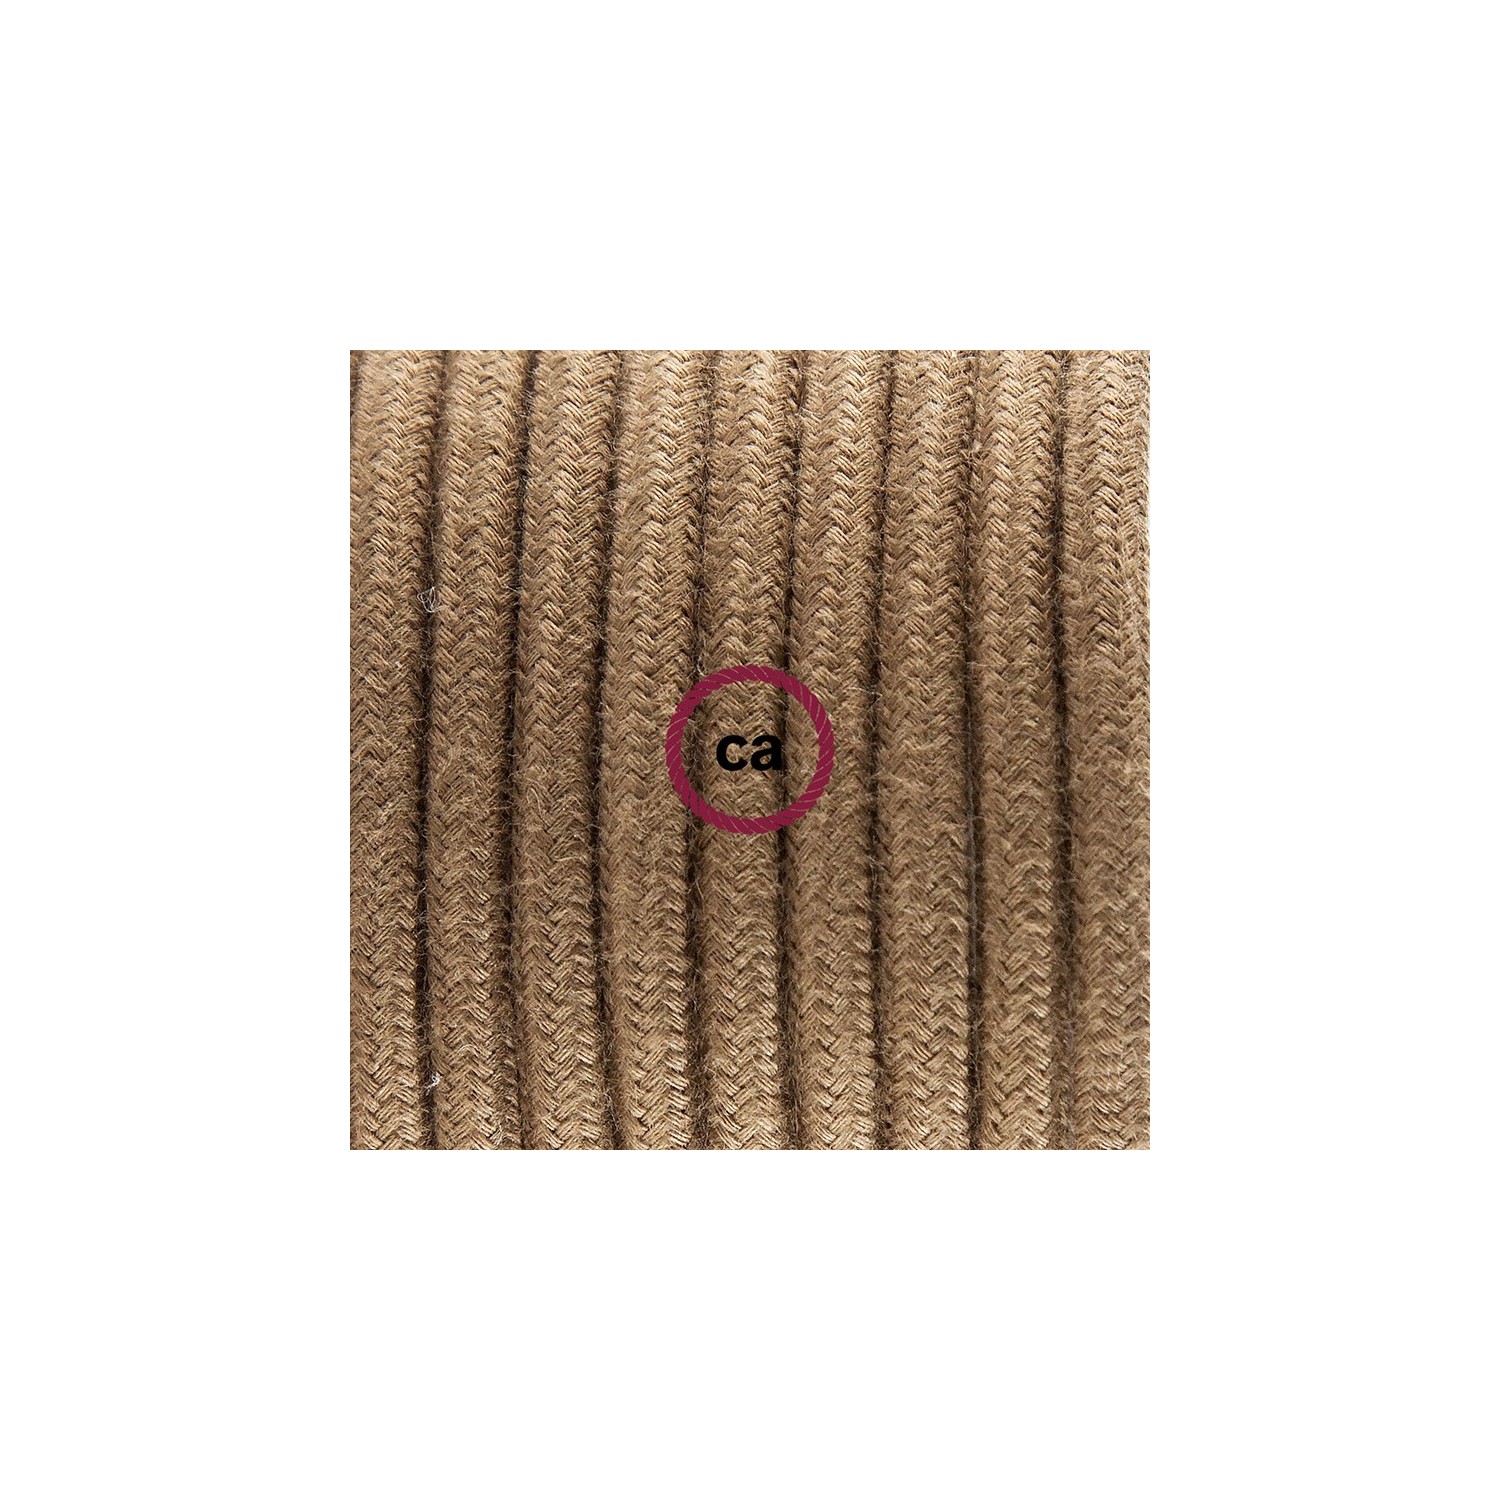 Ronde flexibele textielkabel van katoen met schakelaar en stekker. RC13 - bruin 1,80 m.